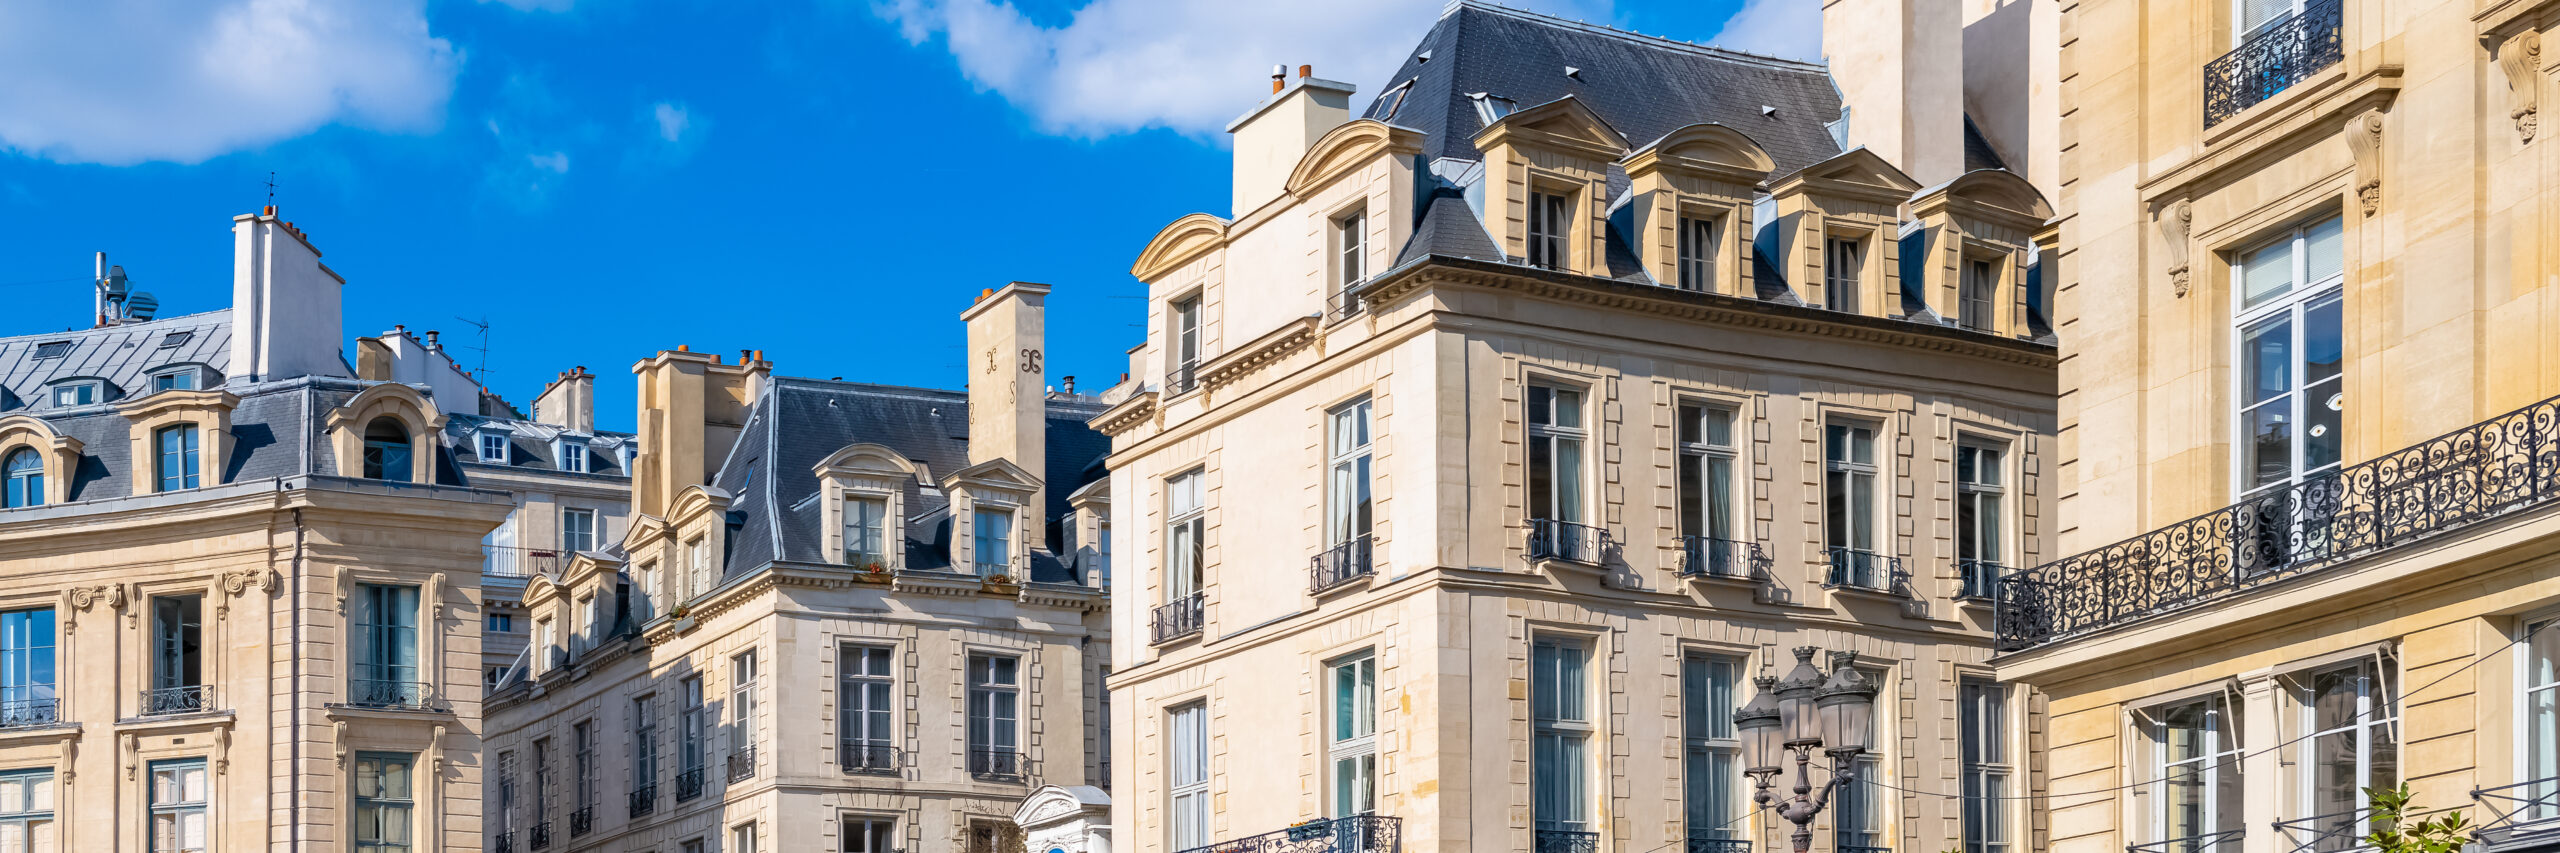 paris, beautiful buildings place des victoires, typical parisian facades and windows